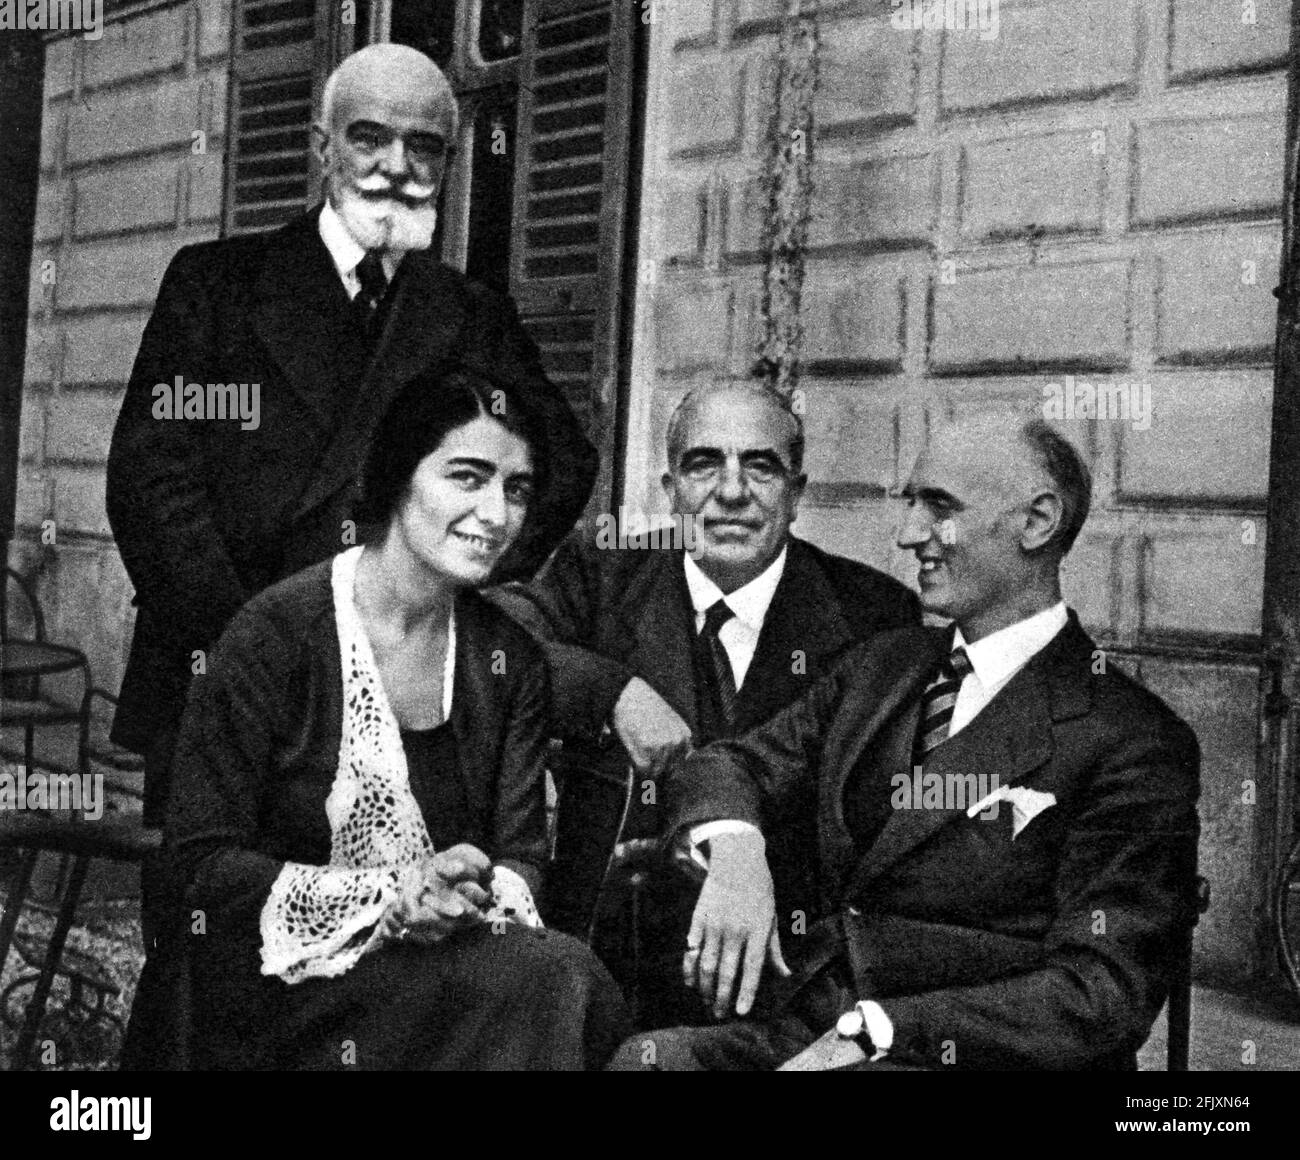 1930 ca. : il direttore e compositore italiano VICTOR DE SABATA (a sinistra) con sua moglie e suo padre, ha seduto al centro il compositore italiano UMBERTO GIORDANO - direttore d'orchestra - musicista - compositore - musica classica - classica - --- Archivio GBB Foto Stock